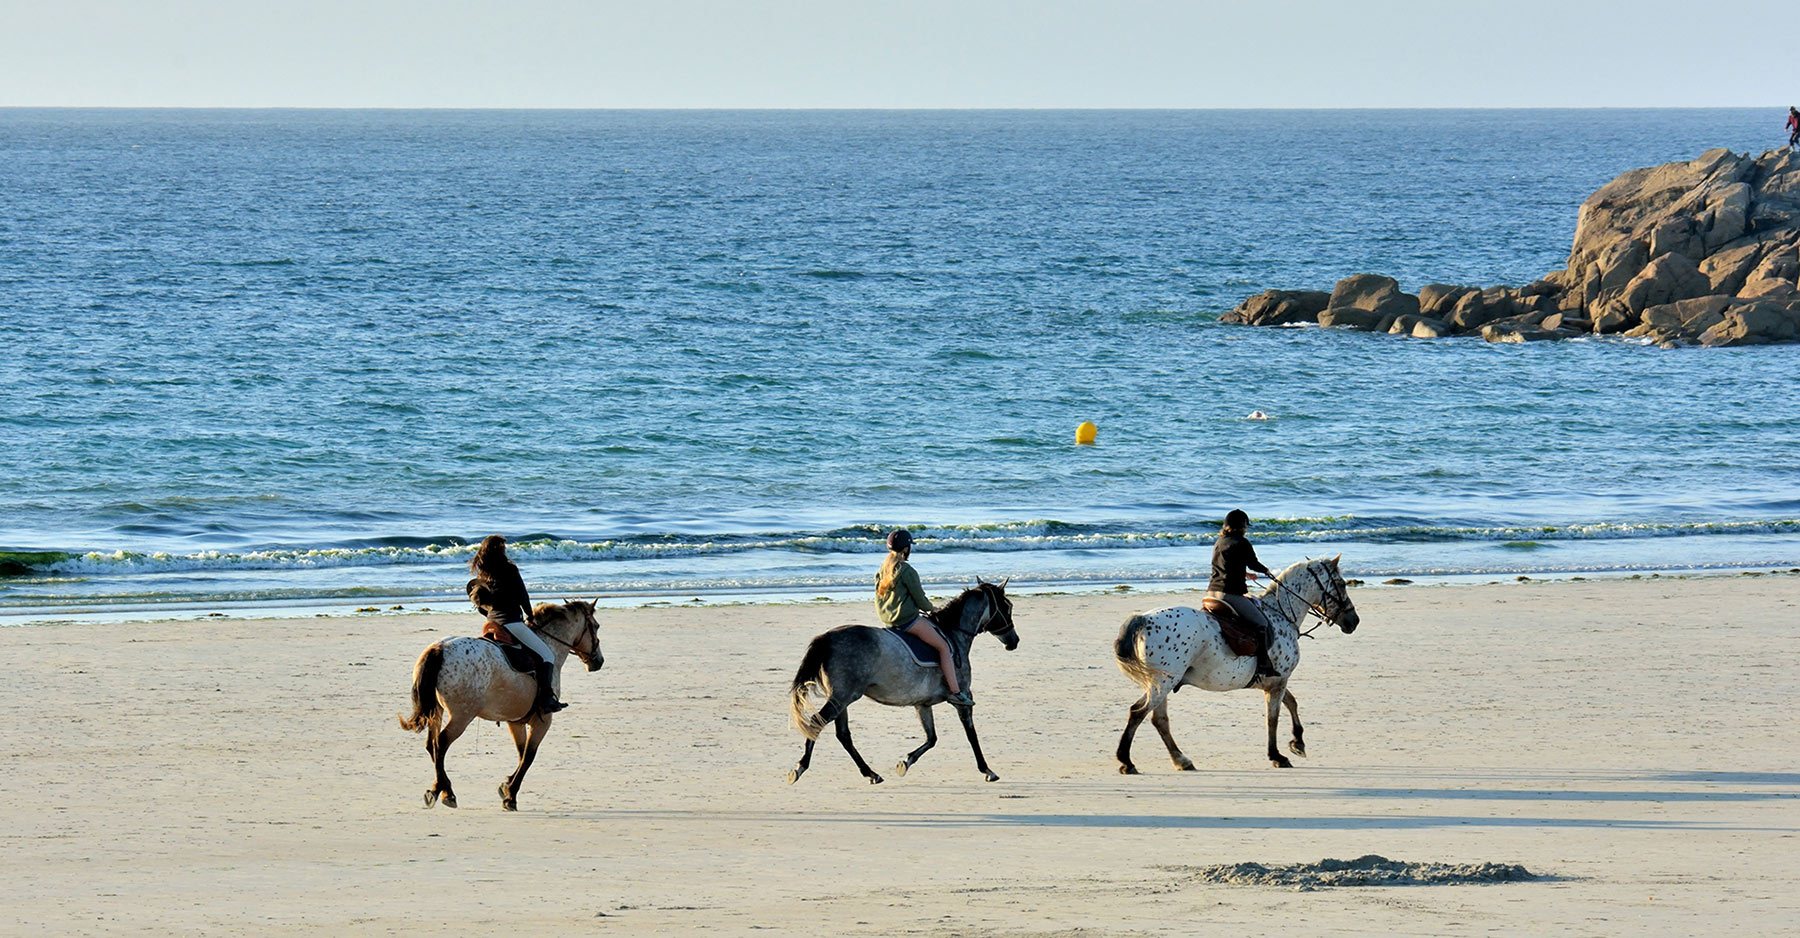 horses on a beach